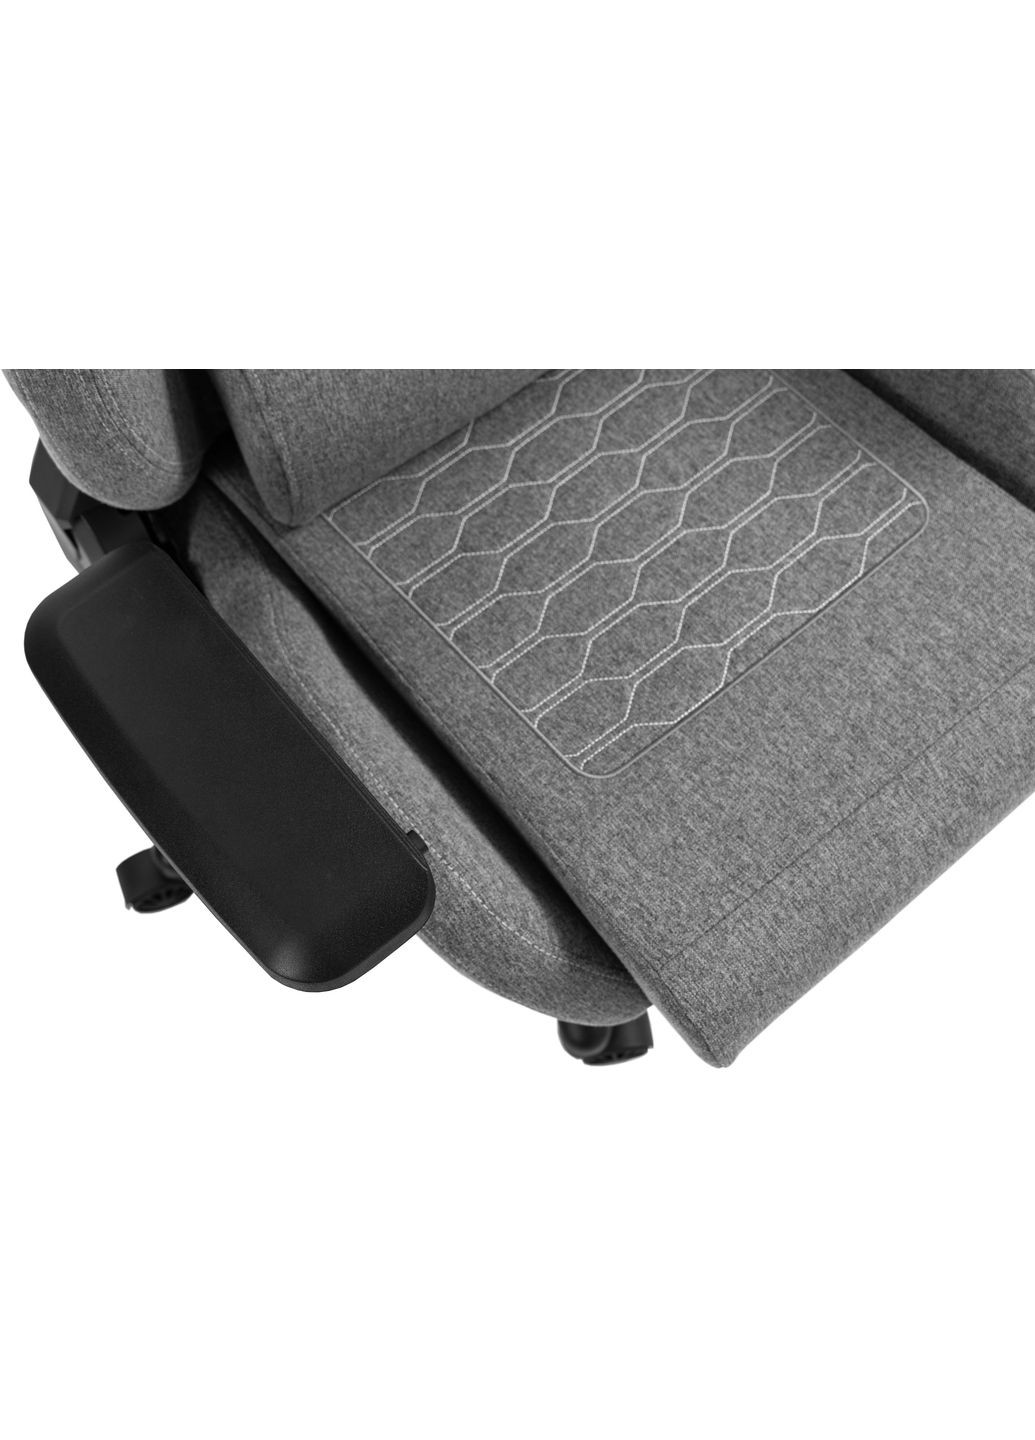 Геймерське крісло X8702 Fabric Gray GT Racer (282720249)